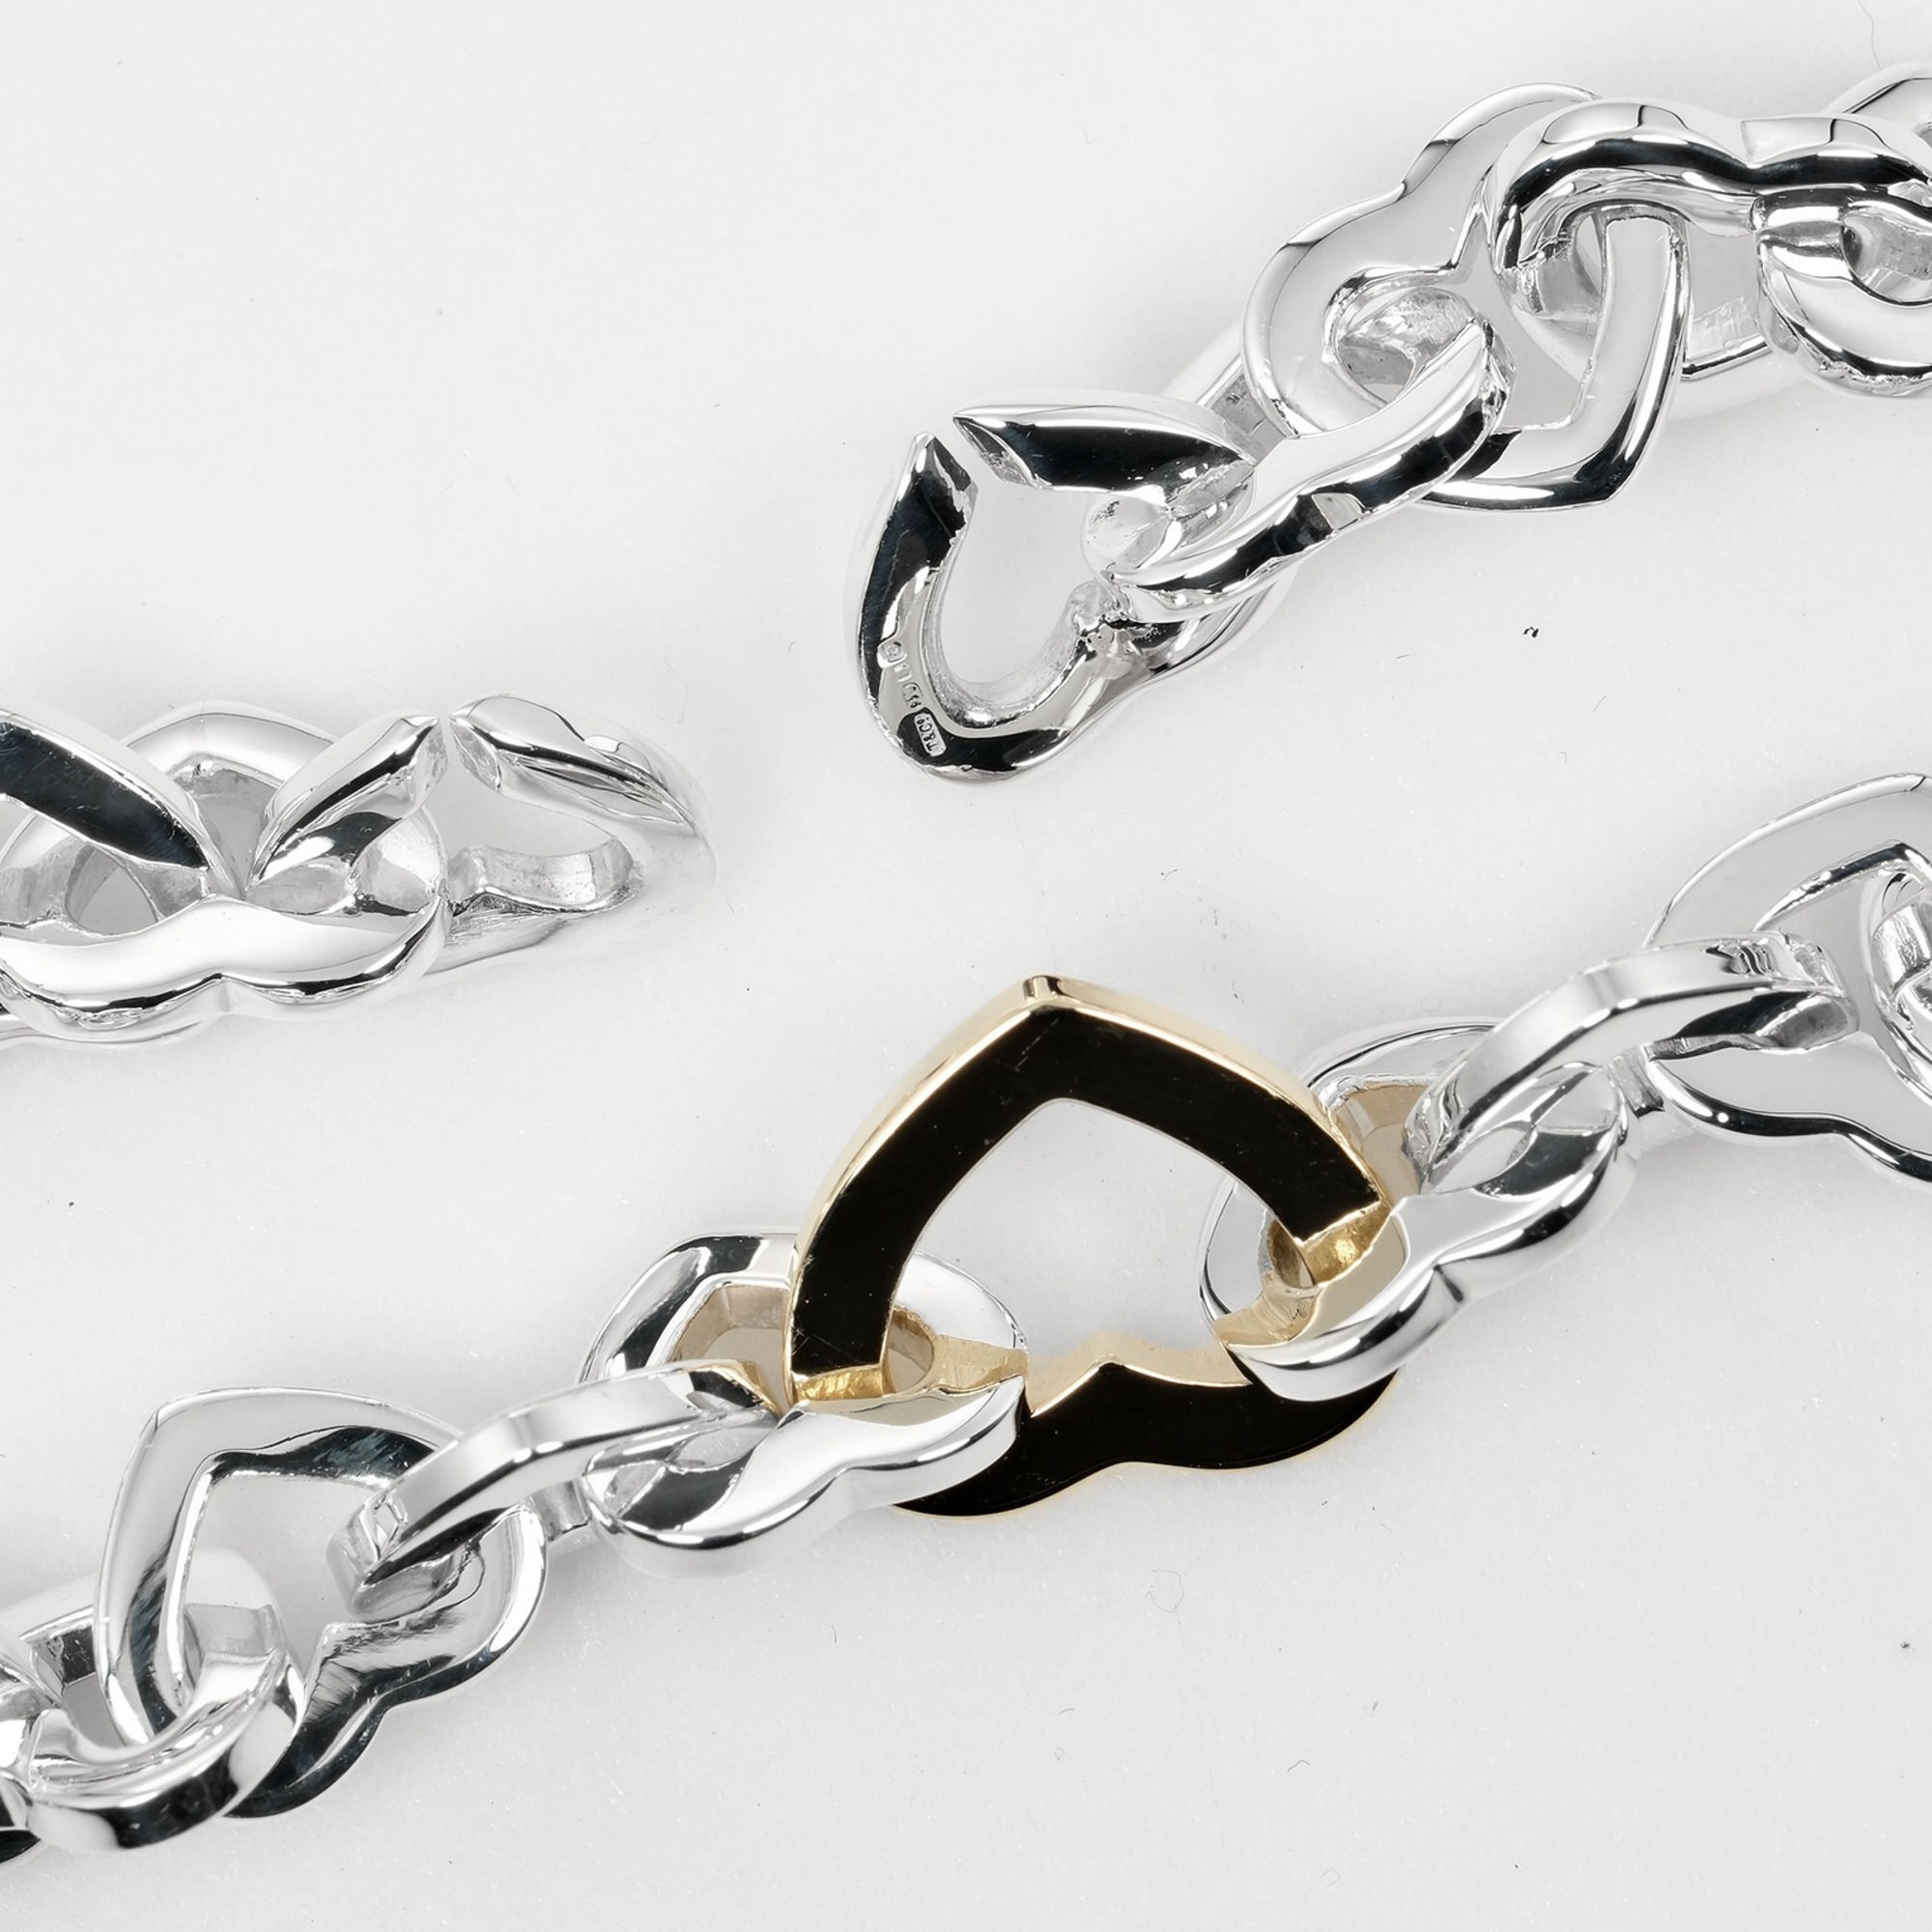 Tiffany TIFFANY&Co. Heart Link Necklace Choker Silver 925 K18 YG Yellow Gold I112223047